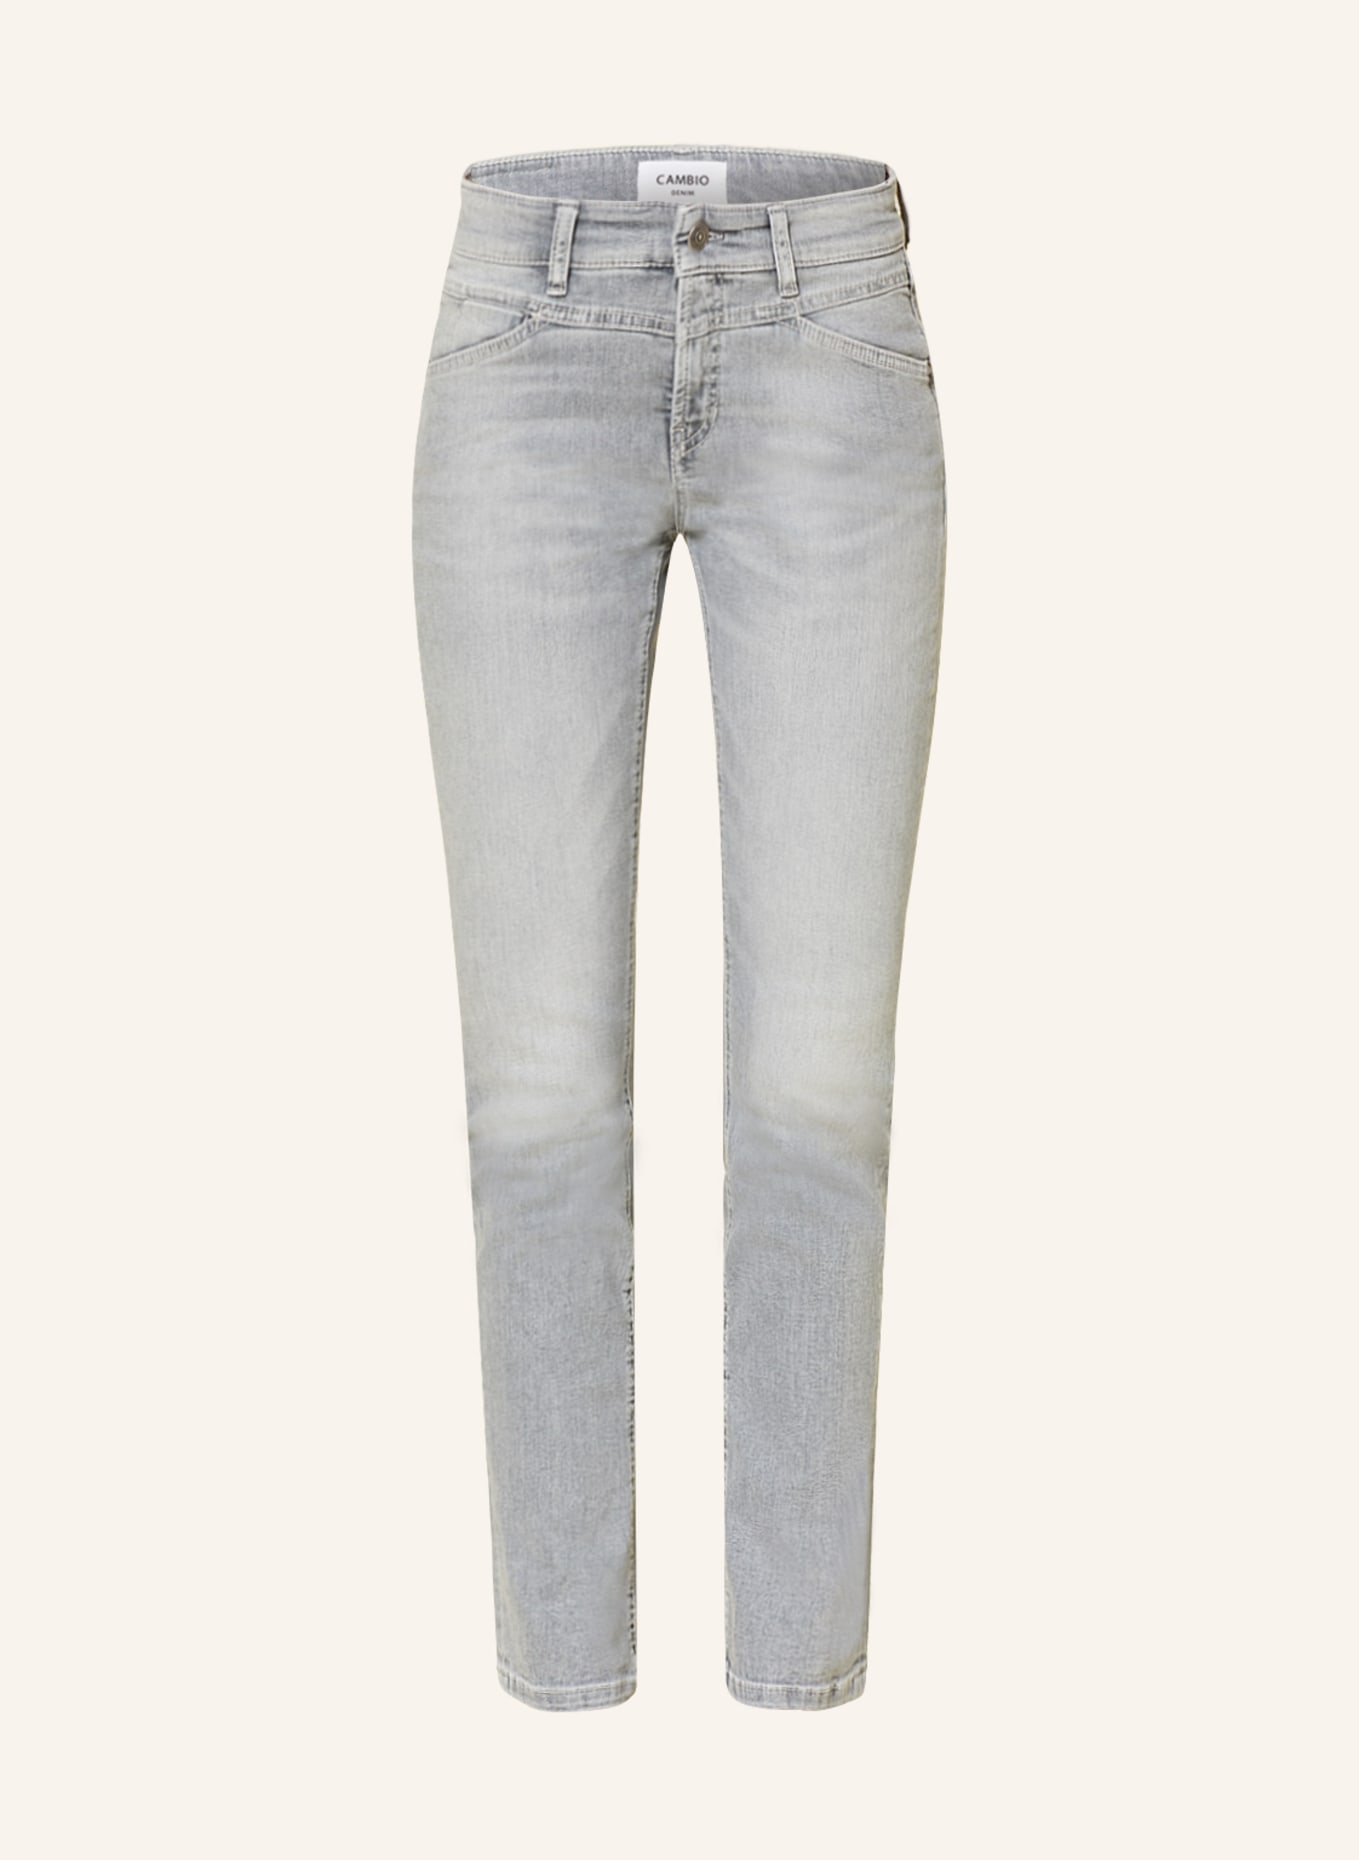 CAMBIO Skinny Jeans PARLA, Farbe: 5177 mid grey (Bild 1)